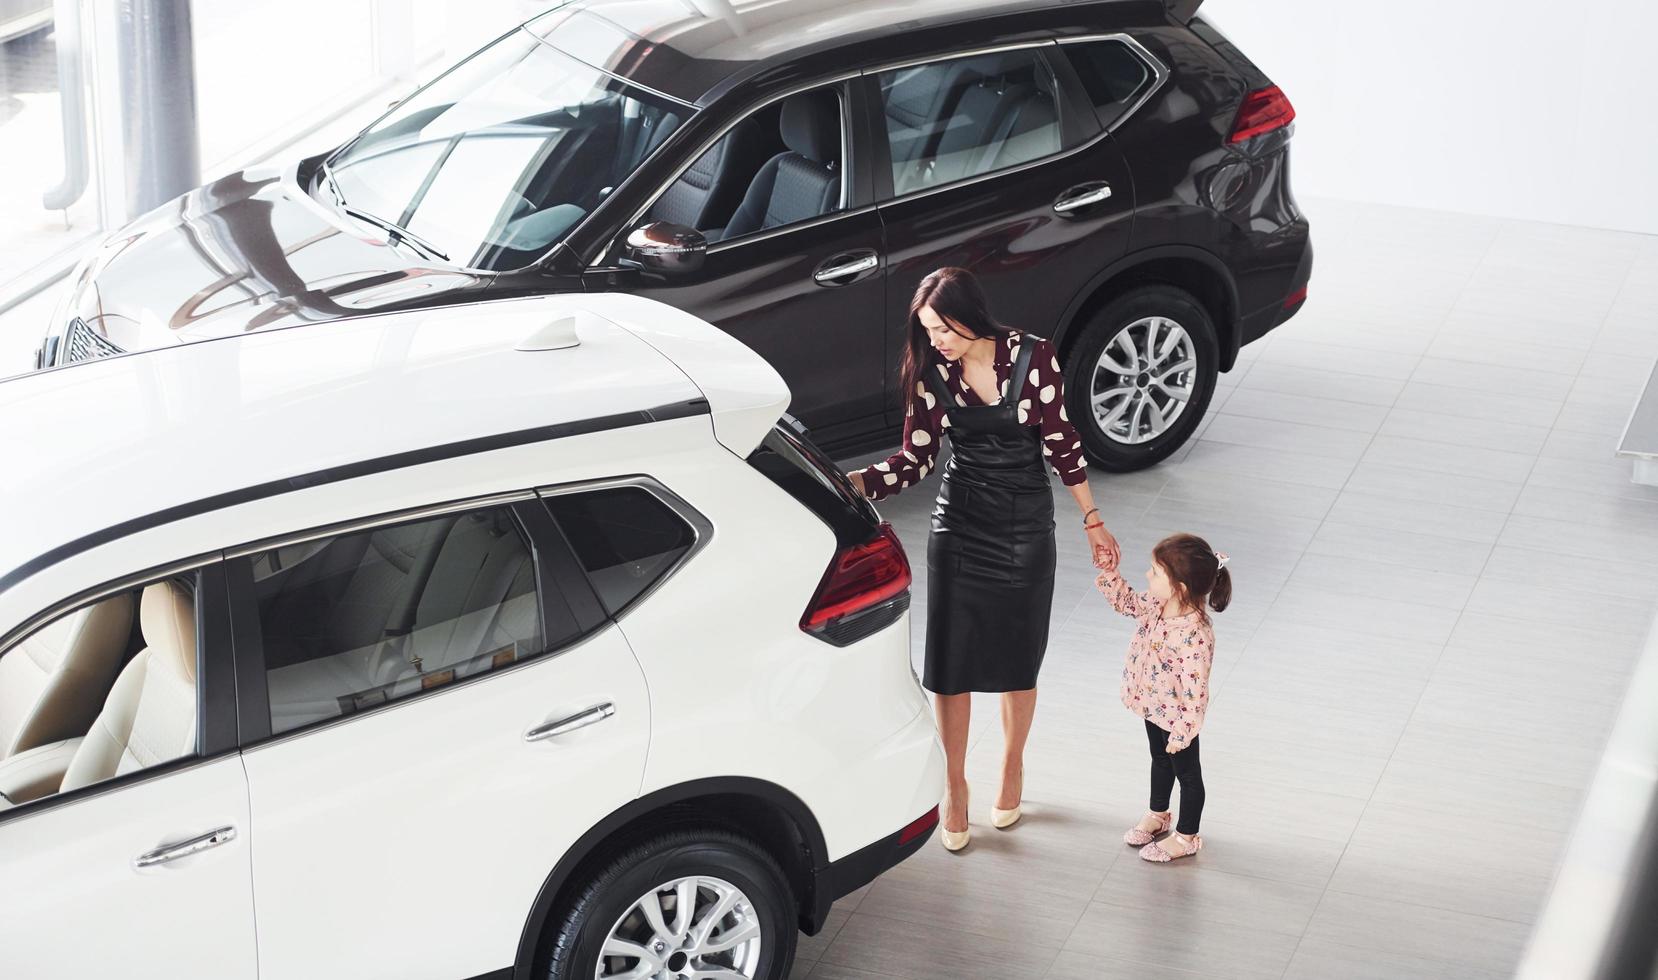 madre con su hija caminando juntas cerca de un automóvil moderno en el interior foto